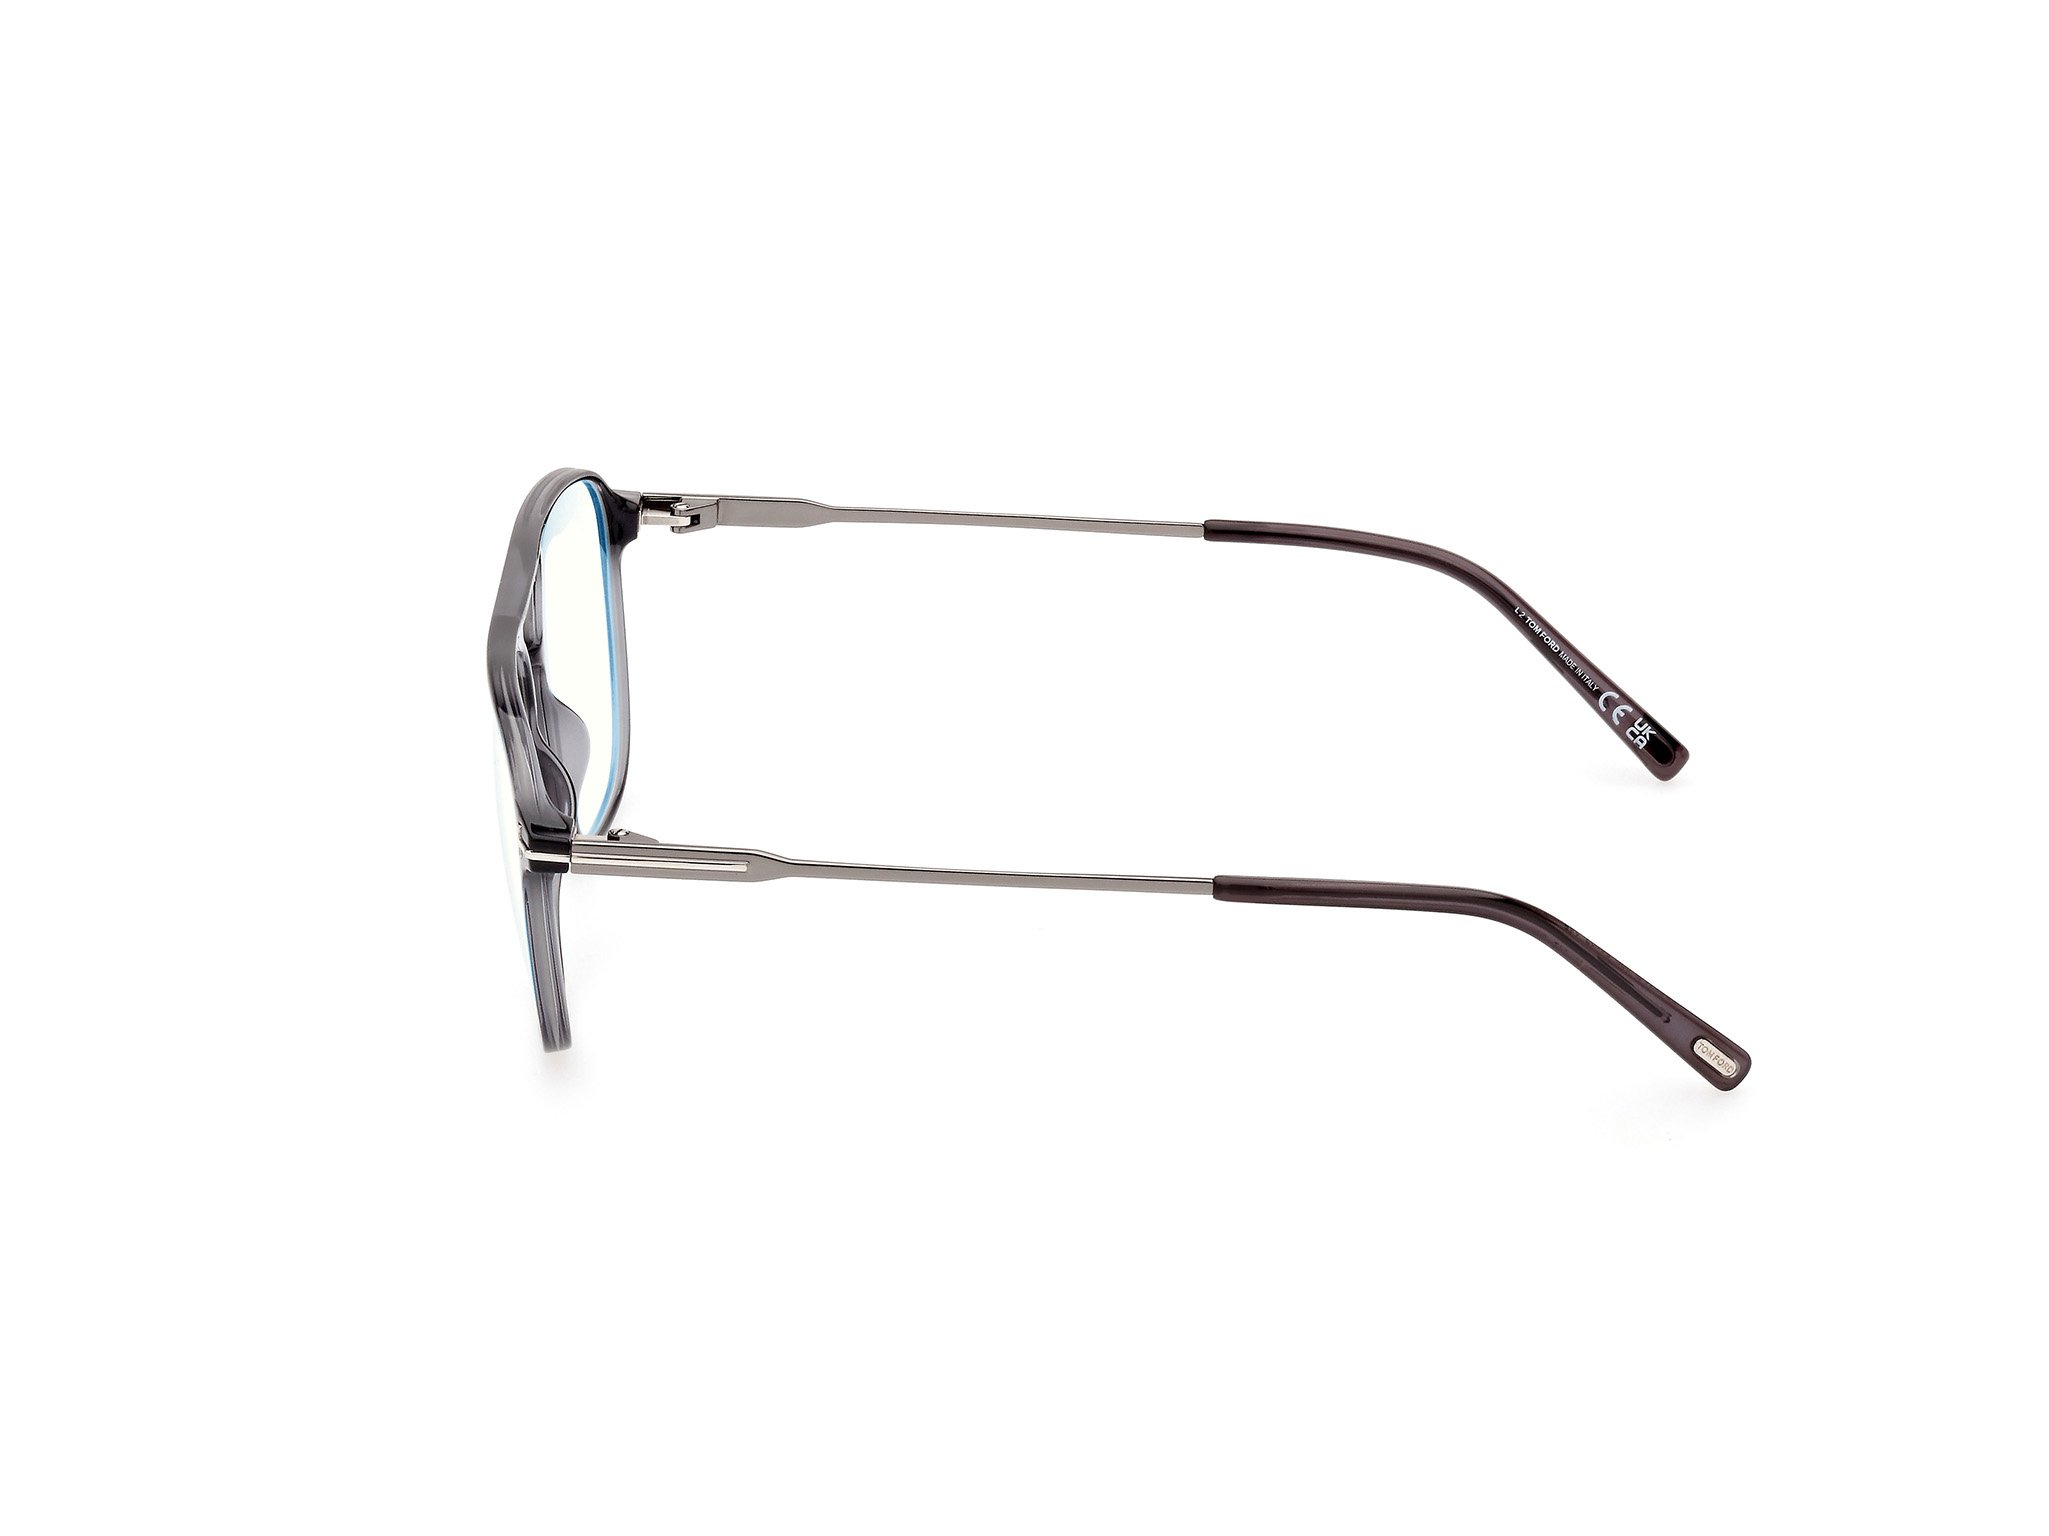 Das Bild zeigt die Korrektionsbrille FT5874-B 020 von der Marke Tom Ford in grau.